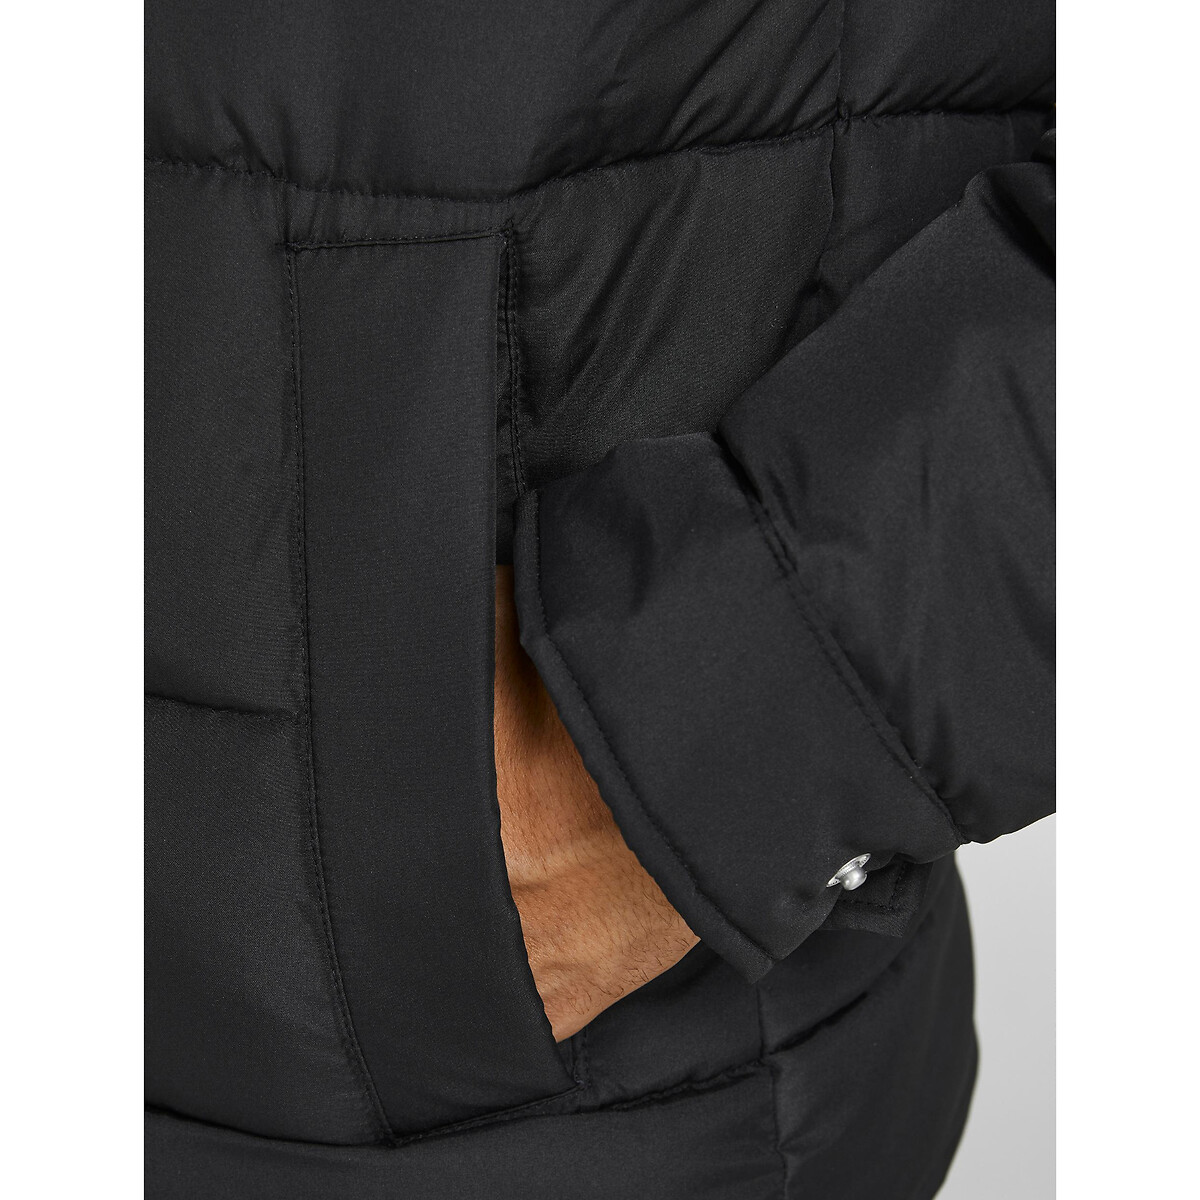 Жакет LaRedoute На молнии с рубашечным воротником Joralpine S черный, размер S - фото 3